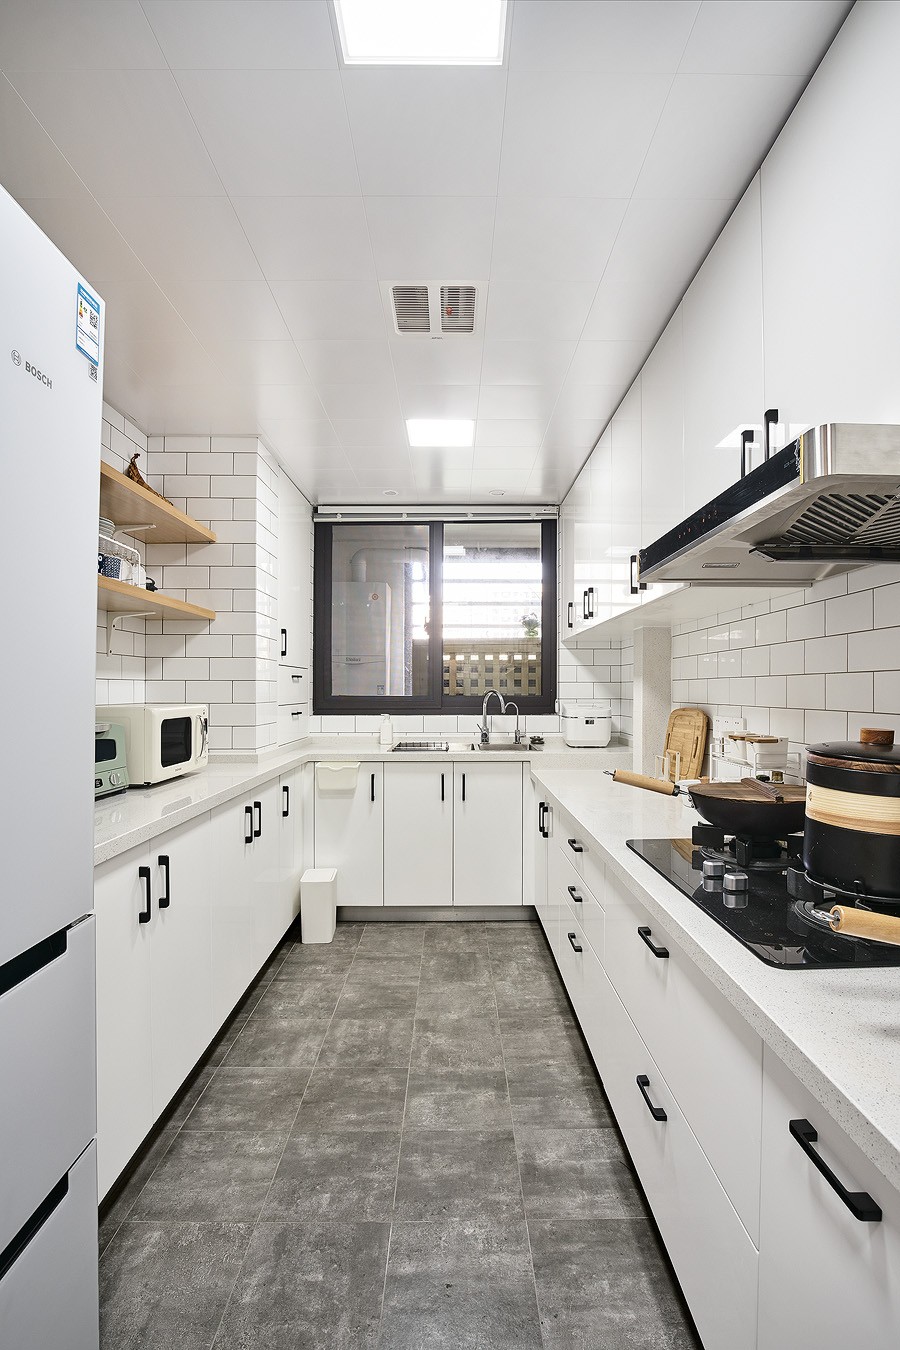 日式简约原木风格家装设计室内装修效果图-厨房